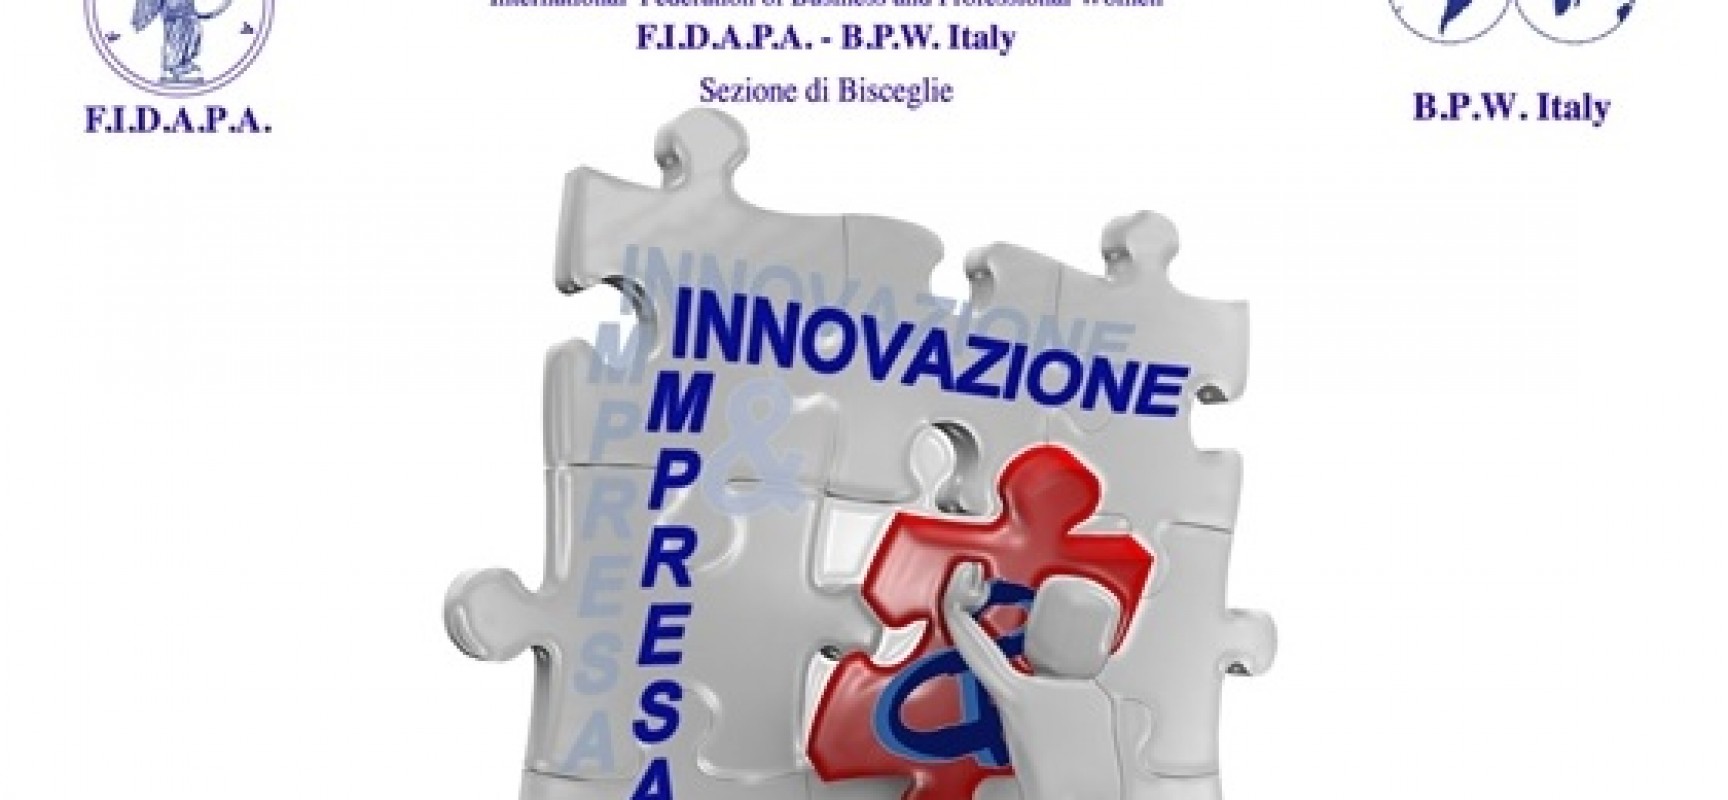 “Innovazione & Impresa” a cura della FIdapa di Bisceglie